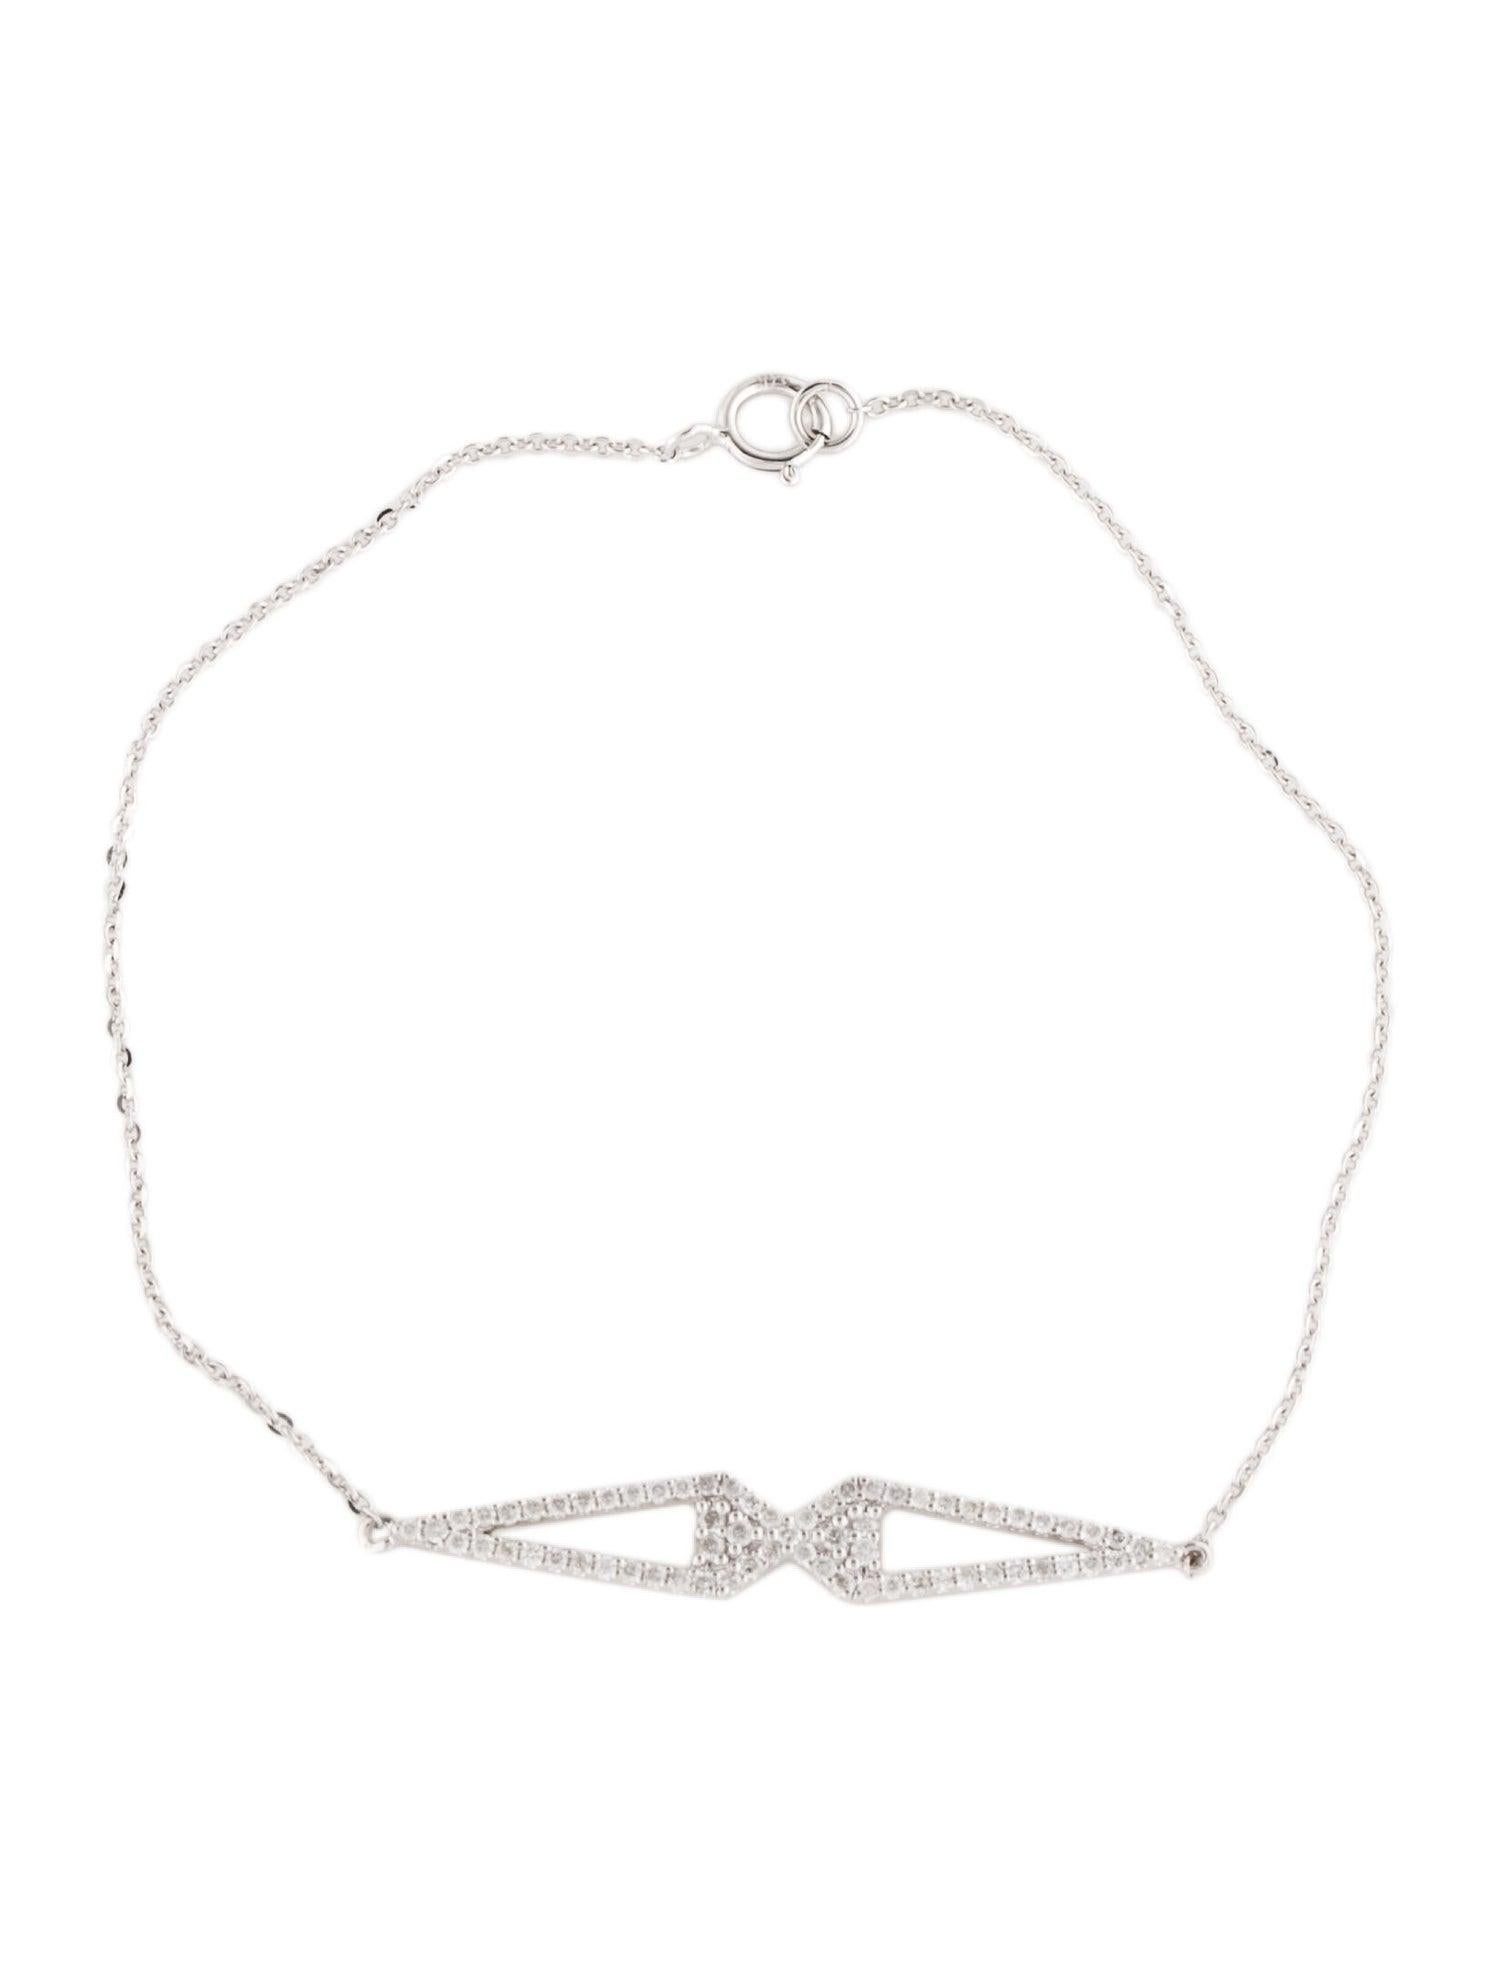 Erleben Sie die himmlische Schönheit des Winters mit unserem Snowflake Soirée Diamond Bracelet. Dieses exquisite Stück ist Teil unserer exklusiven Collection'S, die die zarte Komplexität von Schneeflocken in glitzernden weißen Diamanten einfängt.